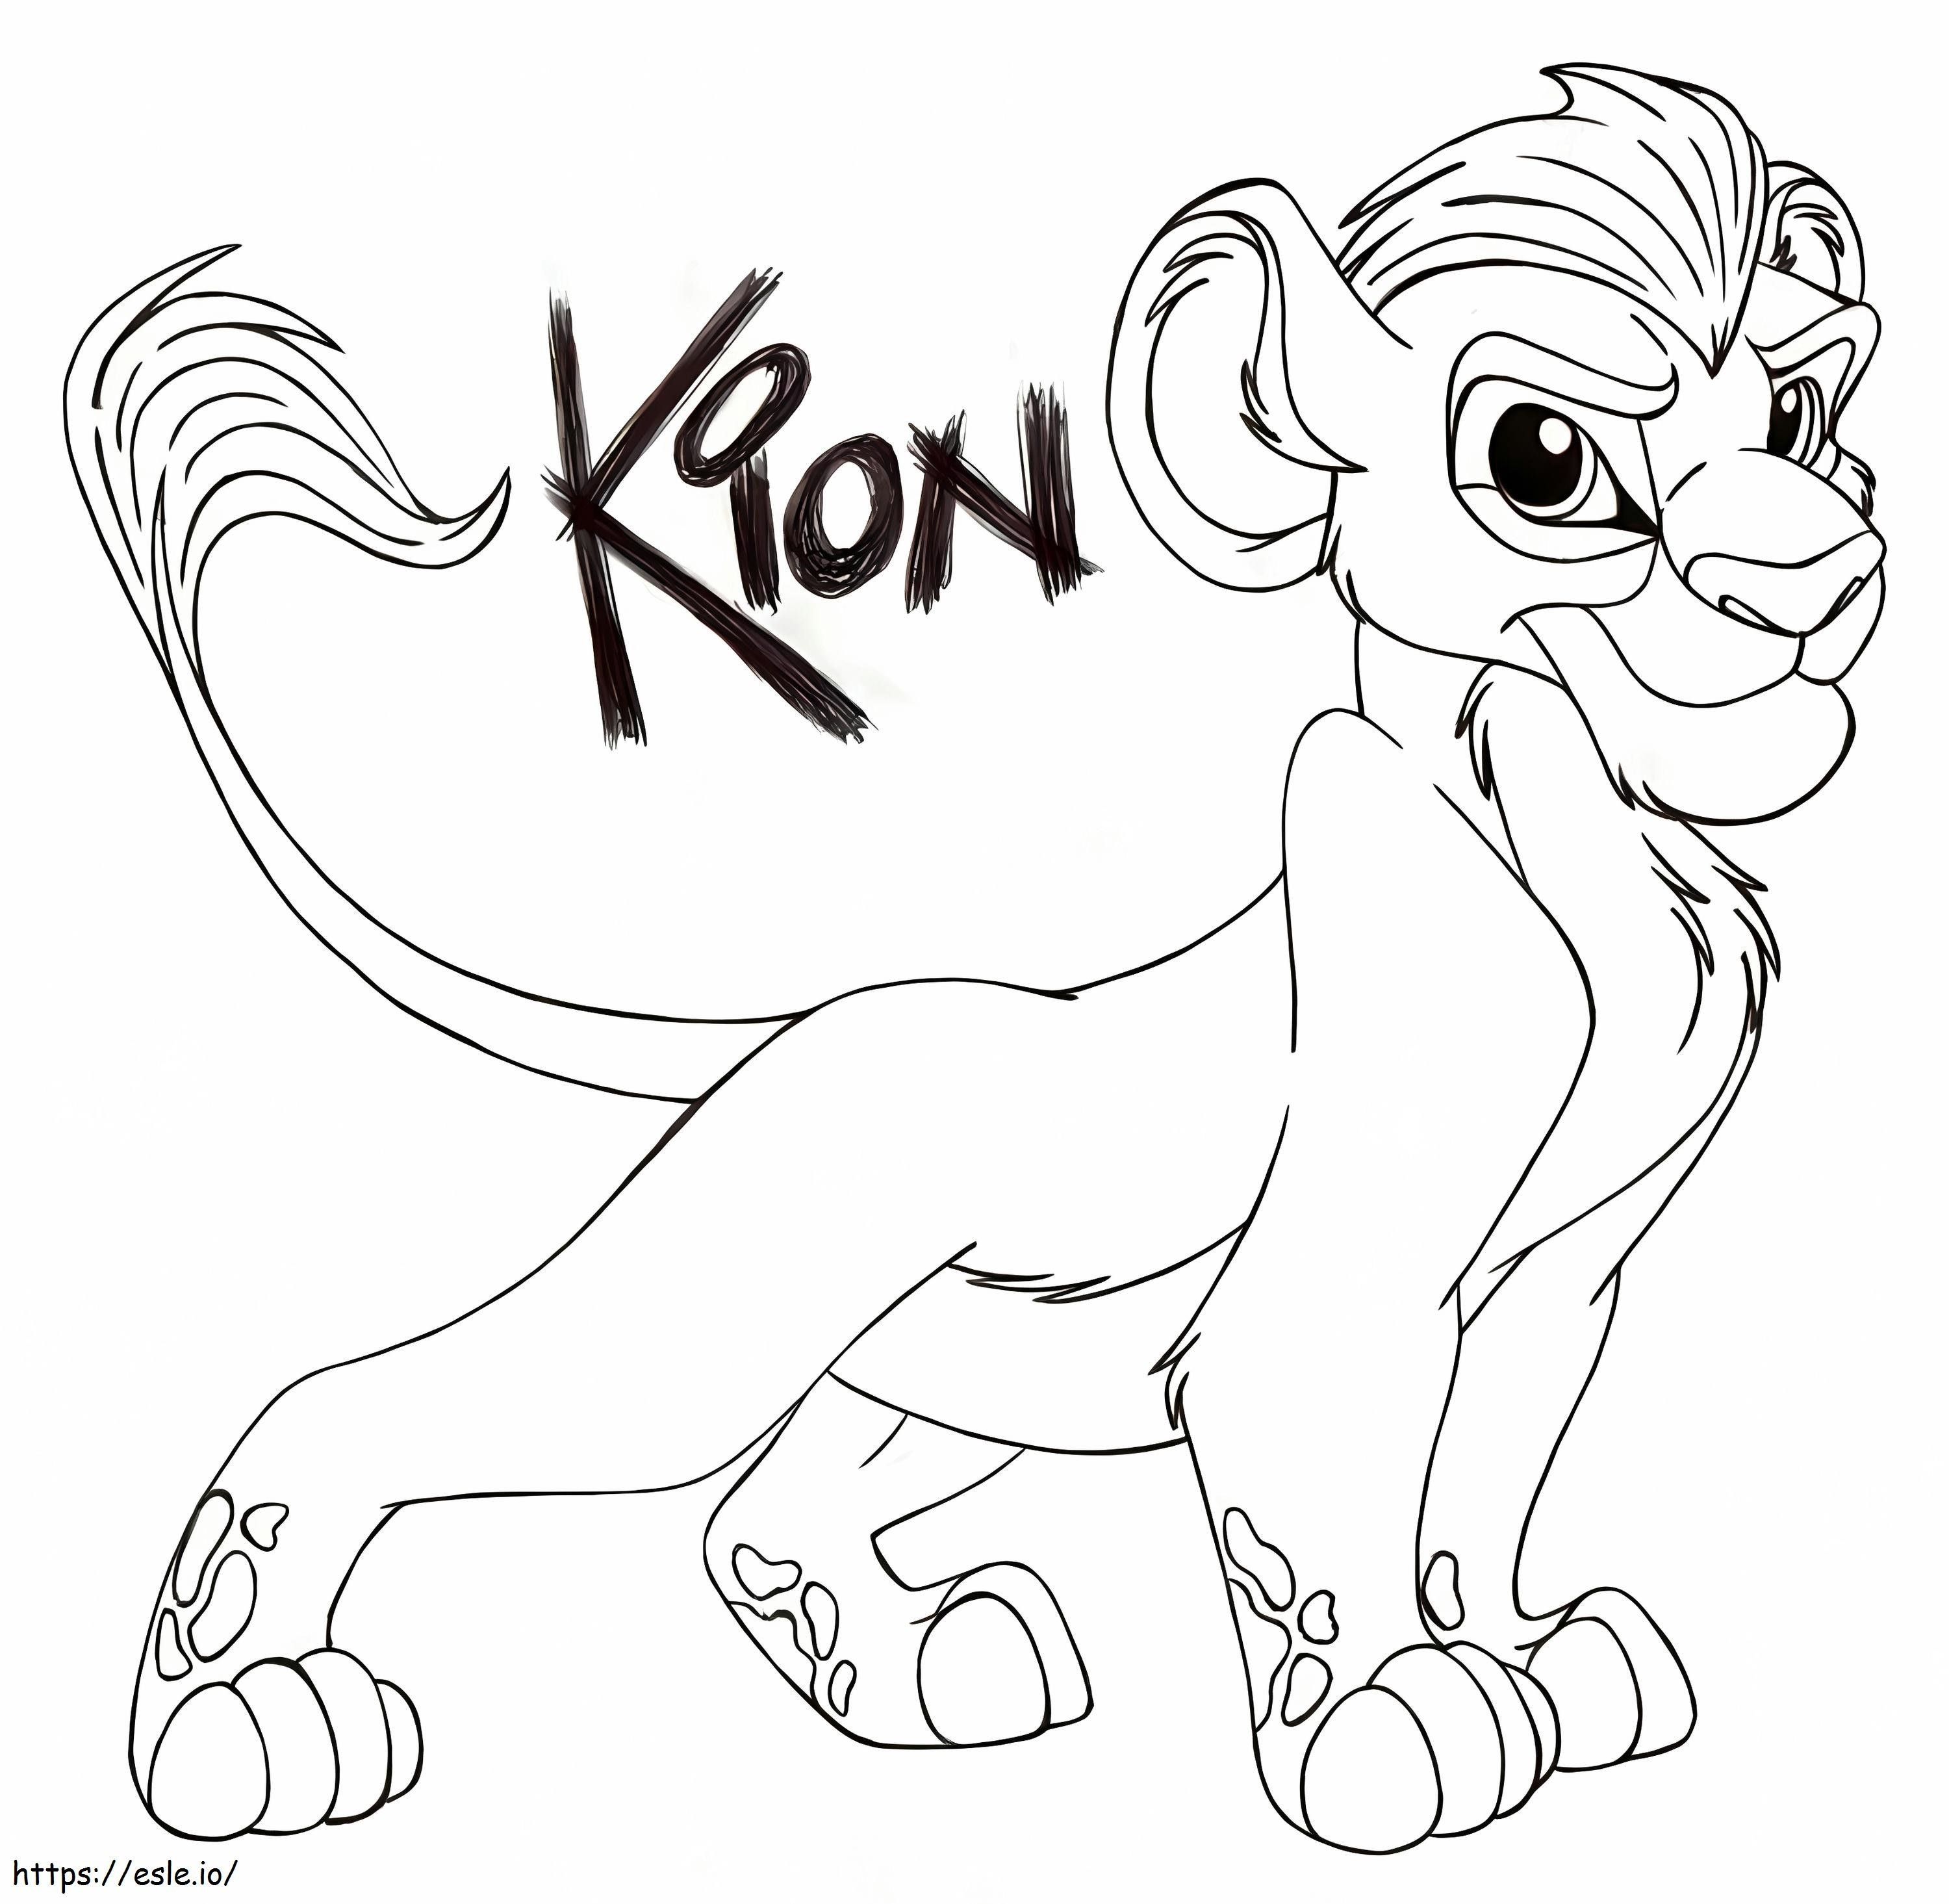 Kion de la guardia del león para colorear